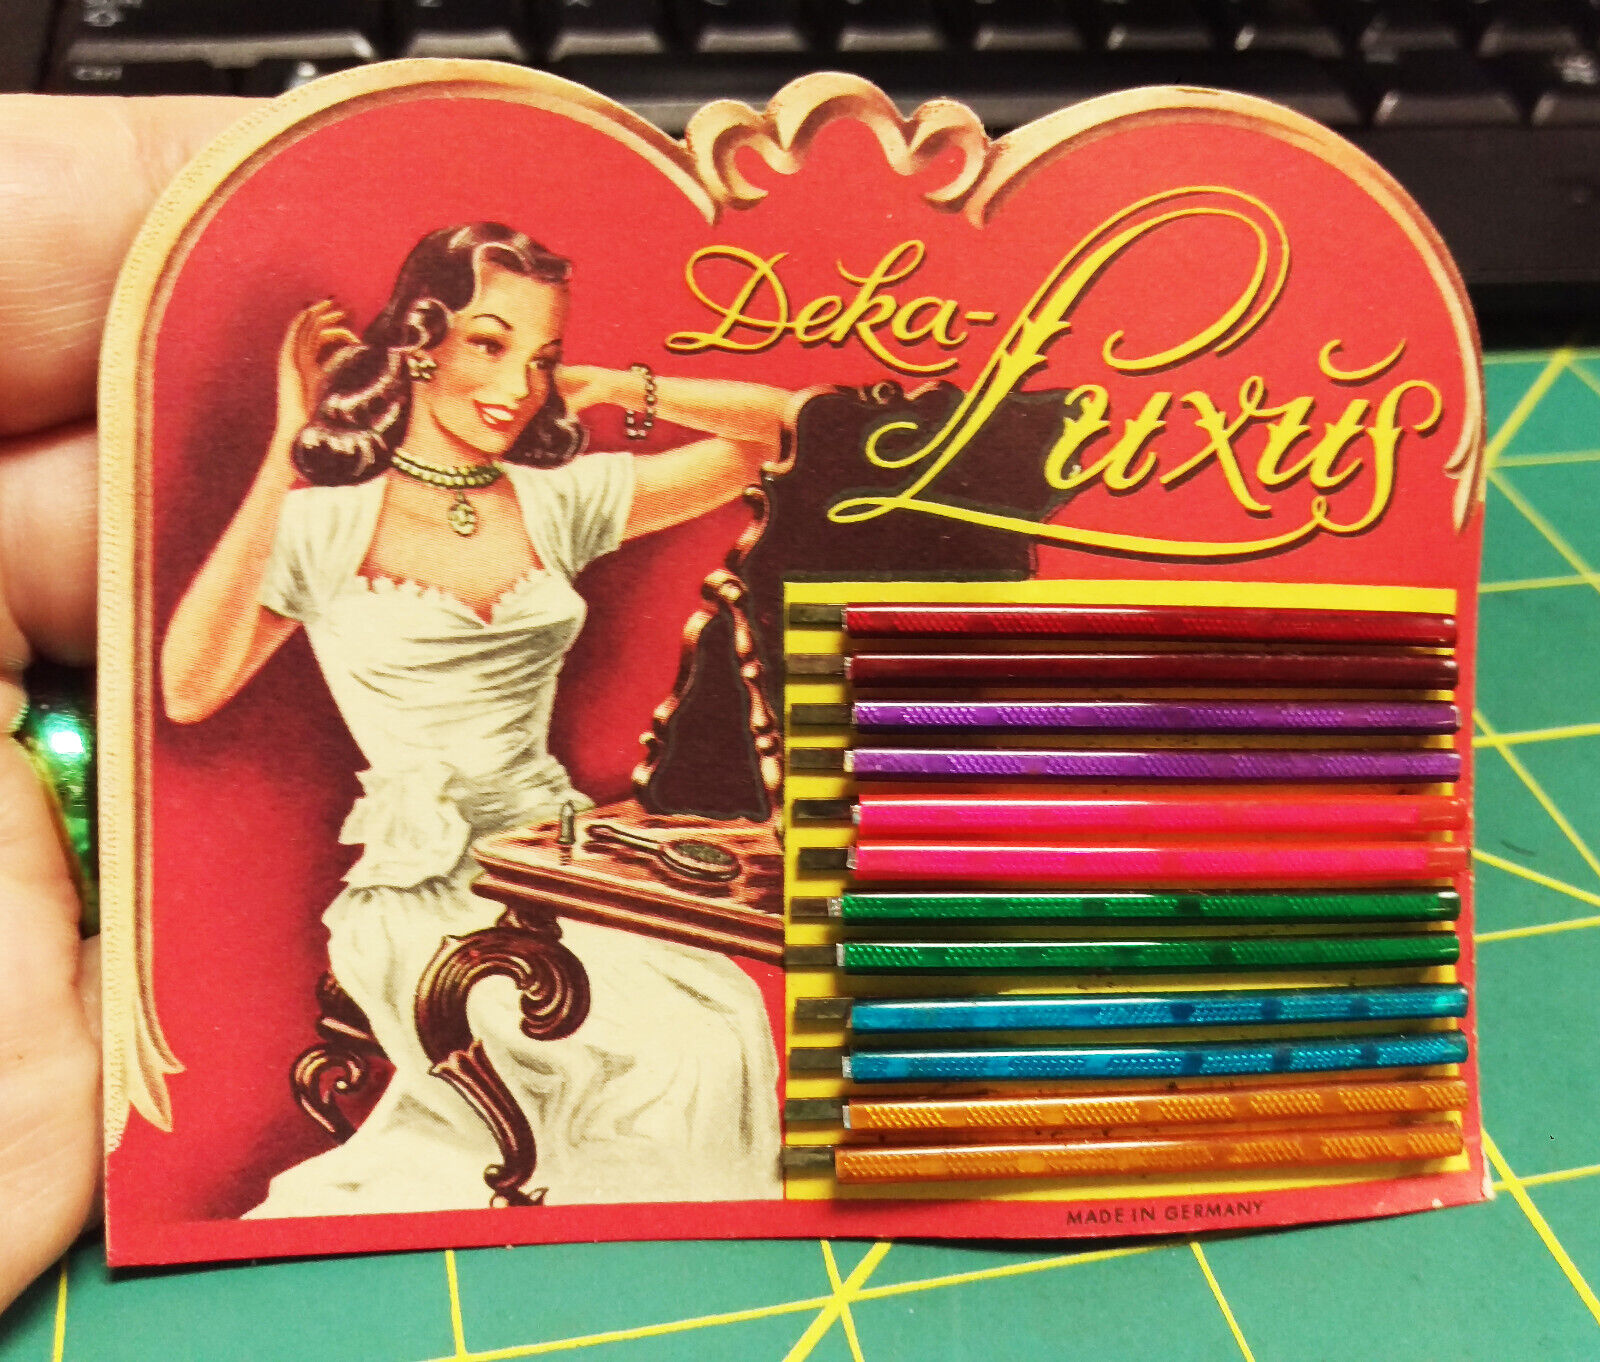 Vintage Deka Luxus Hair pins, new on original display card, Germany 1930s NOS